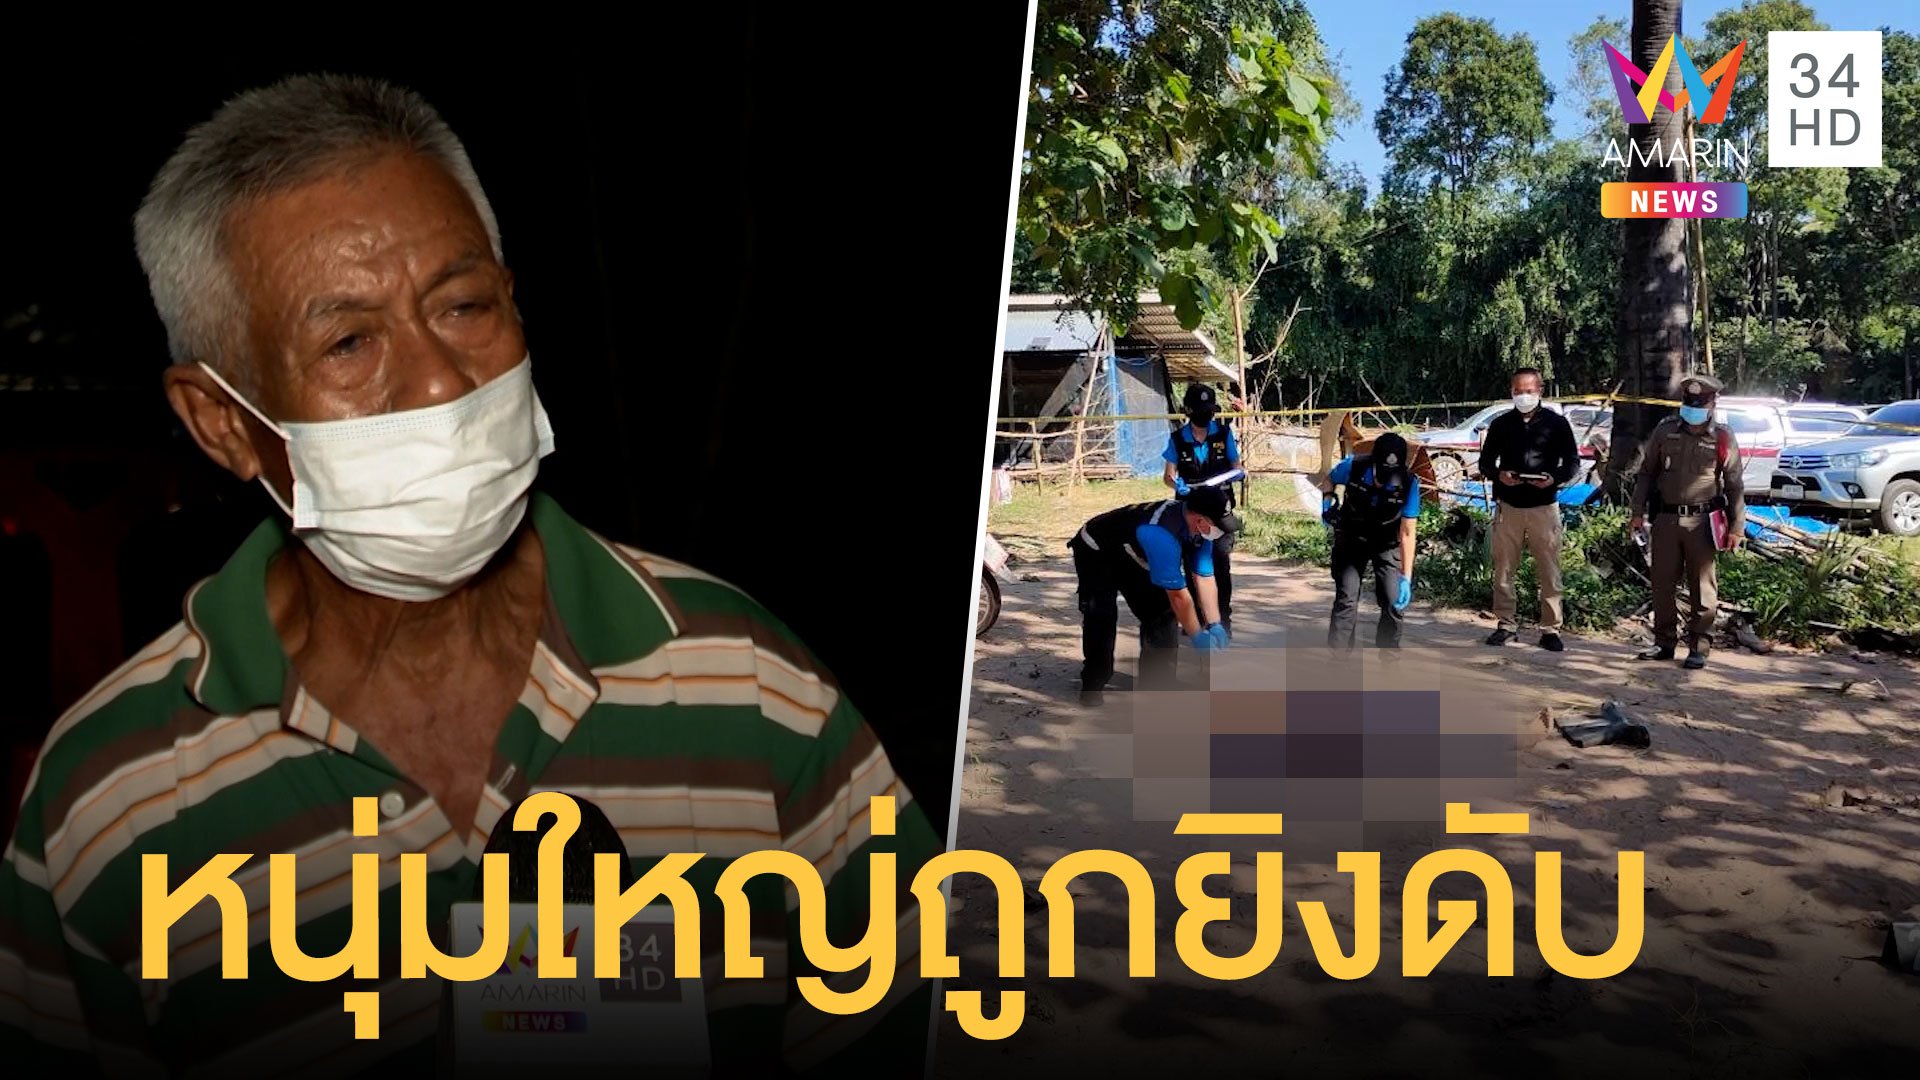 พบศพหนุ่มใหญ่ ถูกยิงตายคาบ้าน พ่อเศร้าดูศพลูกชาย | ข่าวเที่ยงอมรินทร์ | 23 พ.ย. 64 | AMARIN TVHD34